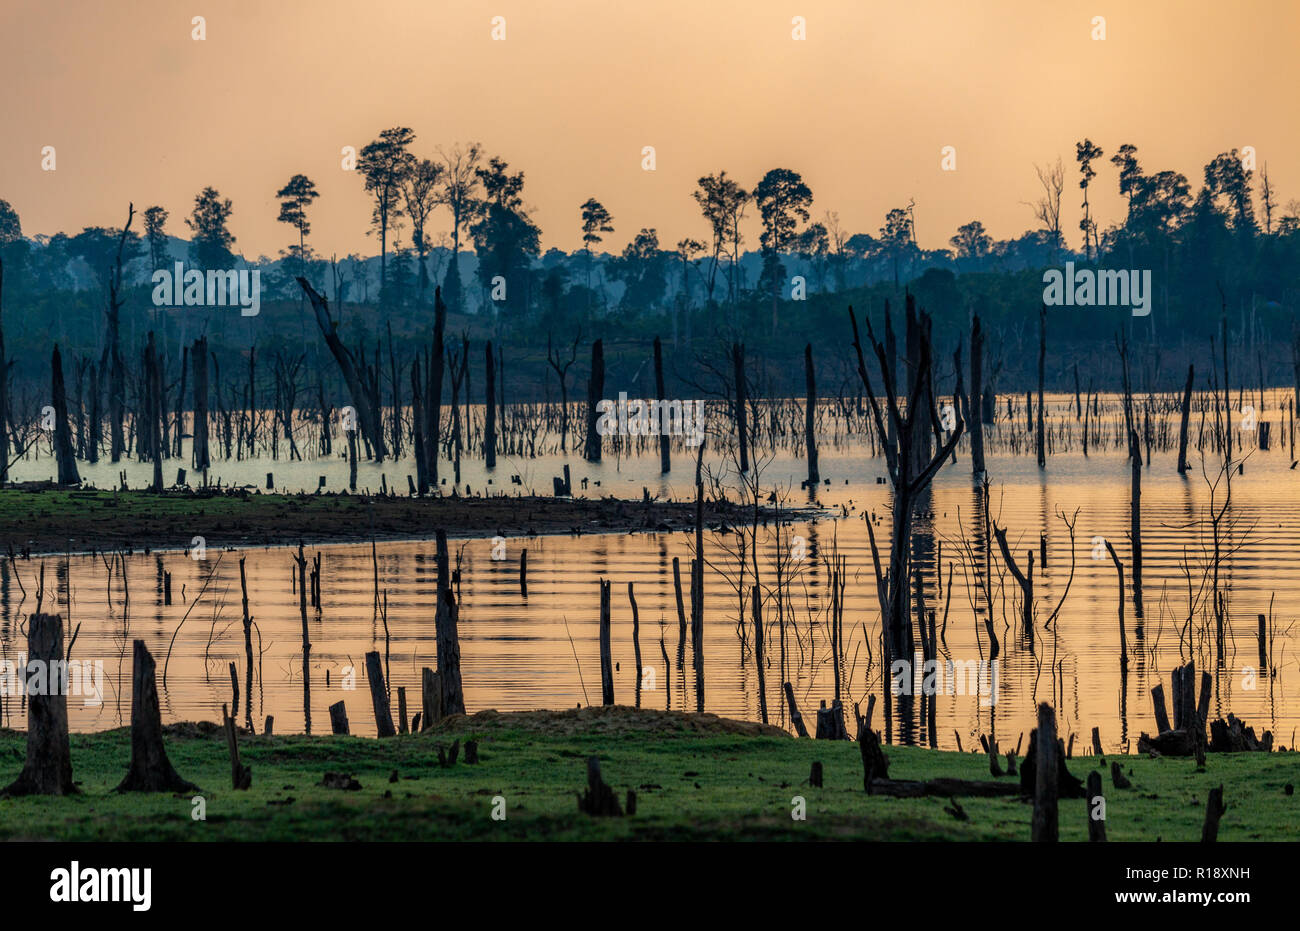 Thakhek, Laos - 19. April 2018: irreale Ansicht einer Landschaft in einer der entlegensten Zonen von Khammouane Region in Laos. Stockfoto